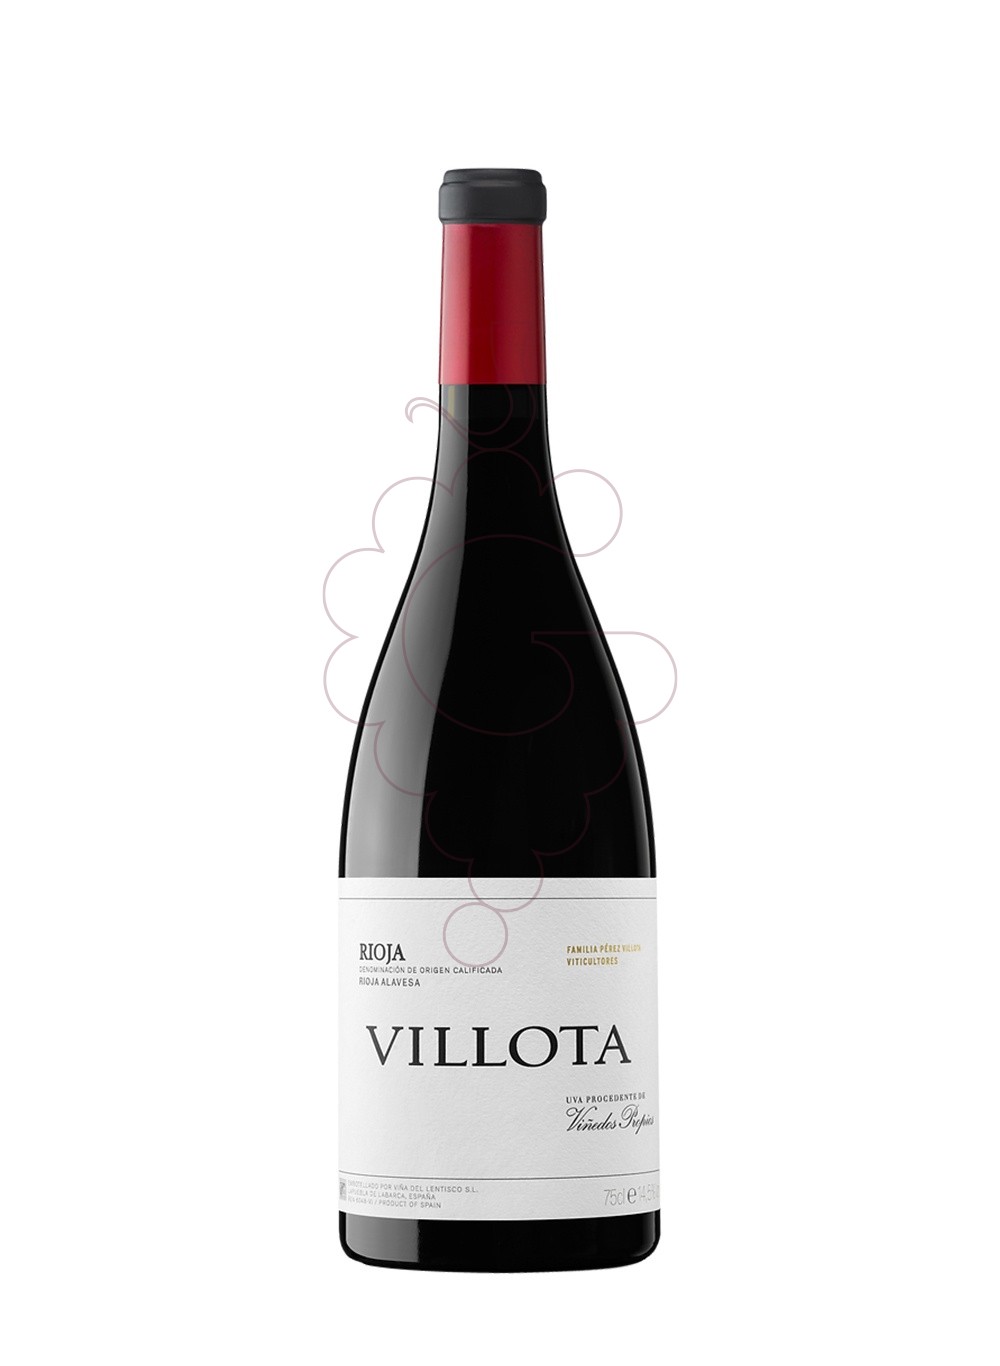 Foto Villota d.ricardo ng 2018 75cl vino tinto